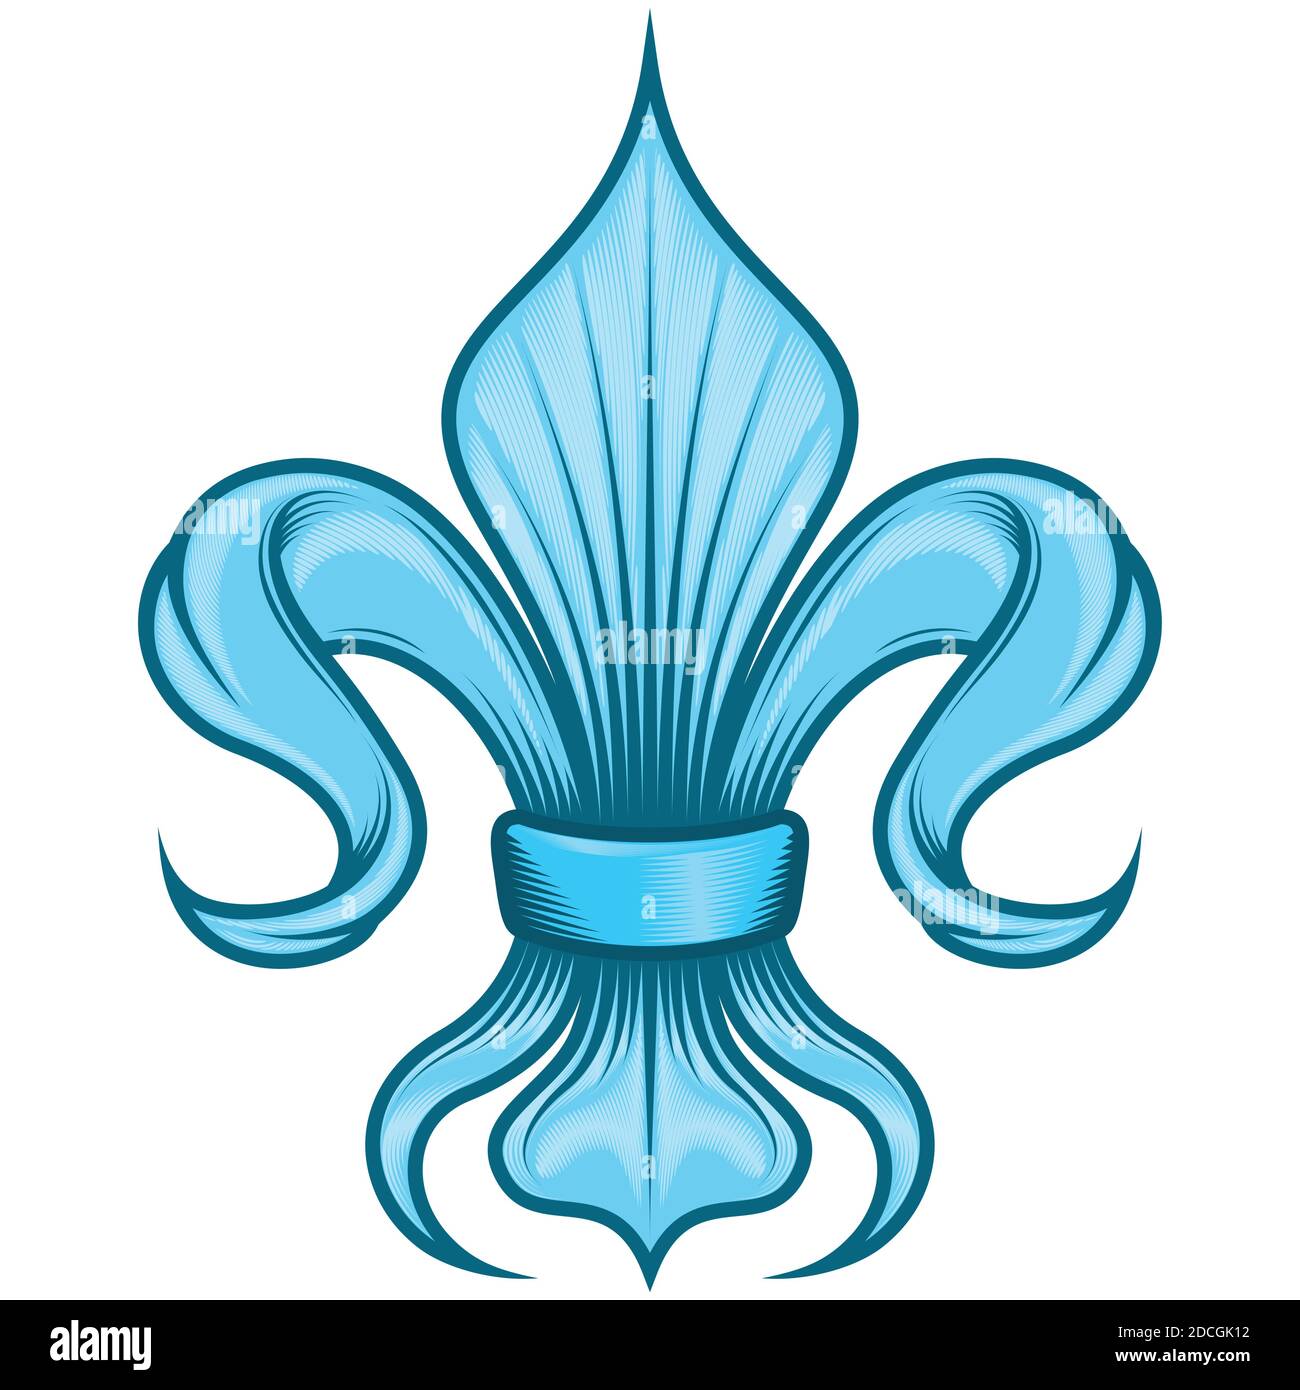 Fleur de Lis Vektor-Design, Darstellung des Fleur de Lis, Symbol in der mittelalterlichen Heraldik verwendet. Alles auf weißem Hintergrund. Stock Vektor